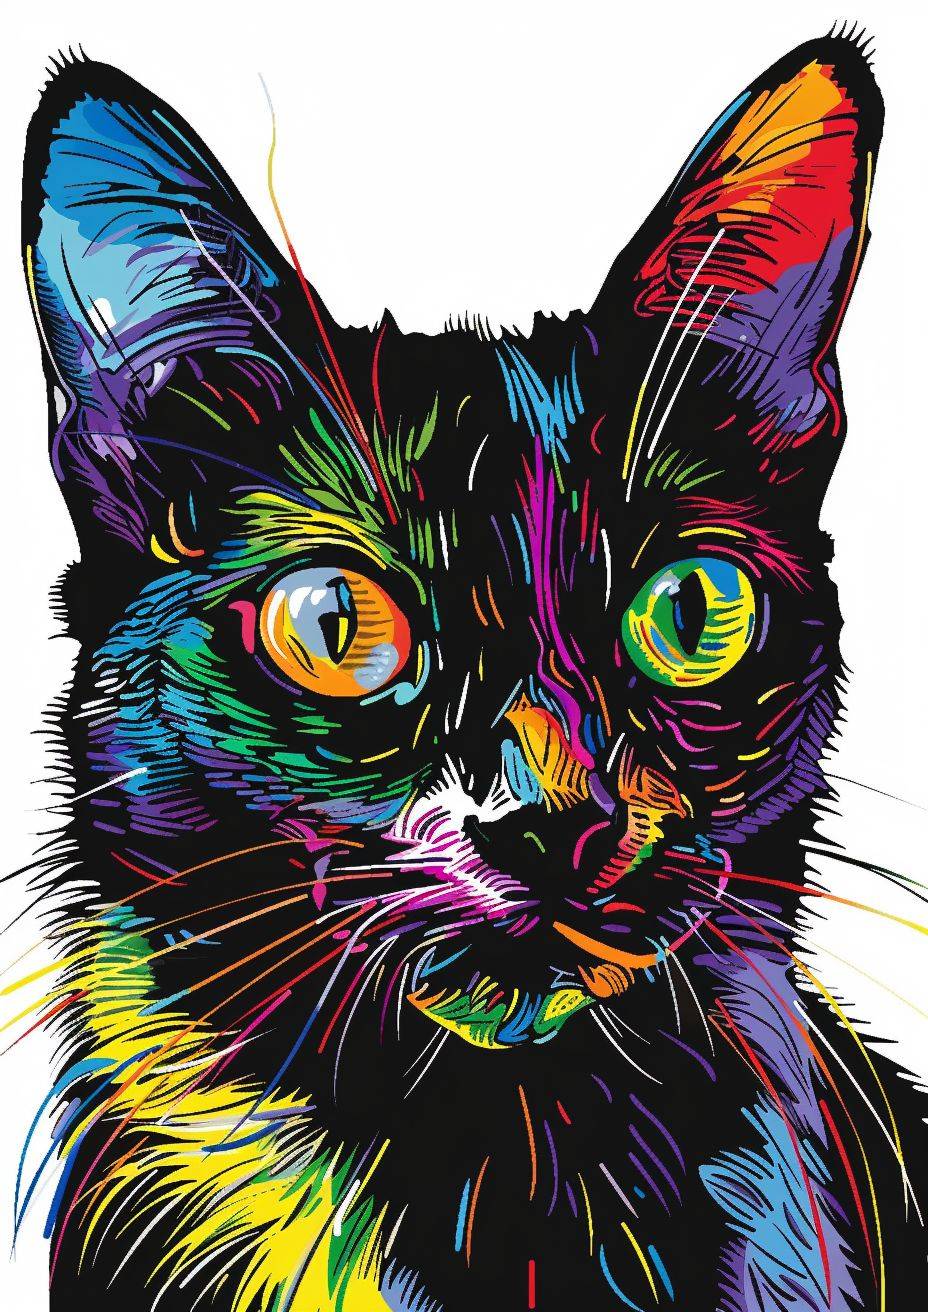 大人の塗り絵ブックを作成してください、白と黒の色のみを使用してください。リアルかつ芸術的な表現力豊かな動物の肖像を作成してください。各動物をユニークにする鮮やかな色彩と複雑なディテールを捉えてください。家の猫やシャム、それぞれの生物の本質を視覚的に見事かつ感情的に共鳴する方法で引き出してください。多様なカラーパレットを使用し、芸術的なスタイルで動物王国の多様性と美しさを伝える実験をしてください。創造力を発揮し、これらの動物の肖像を通じて自然界に対する畏敬と感謝の気持ちを引き起こしてください。